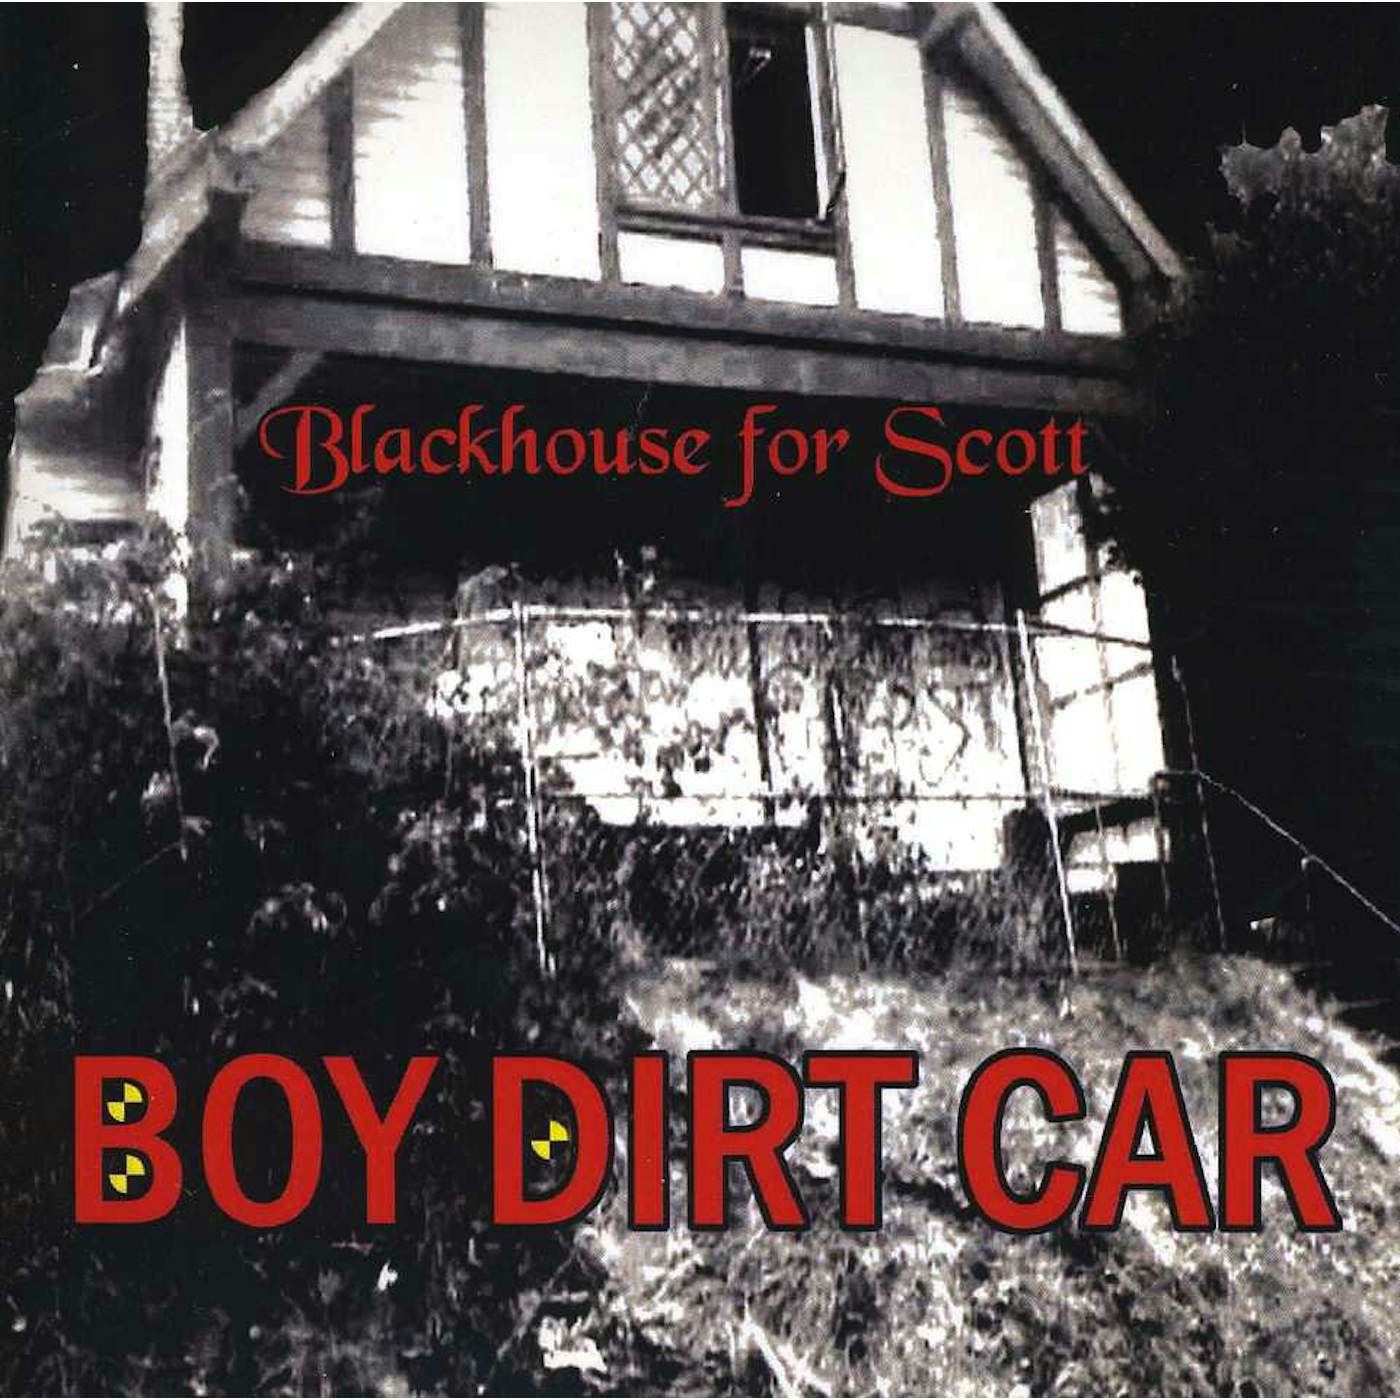 Boy Dirt Car BLACK HOUSE FOR SCOTT CD